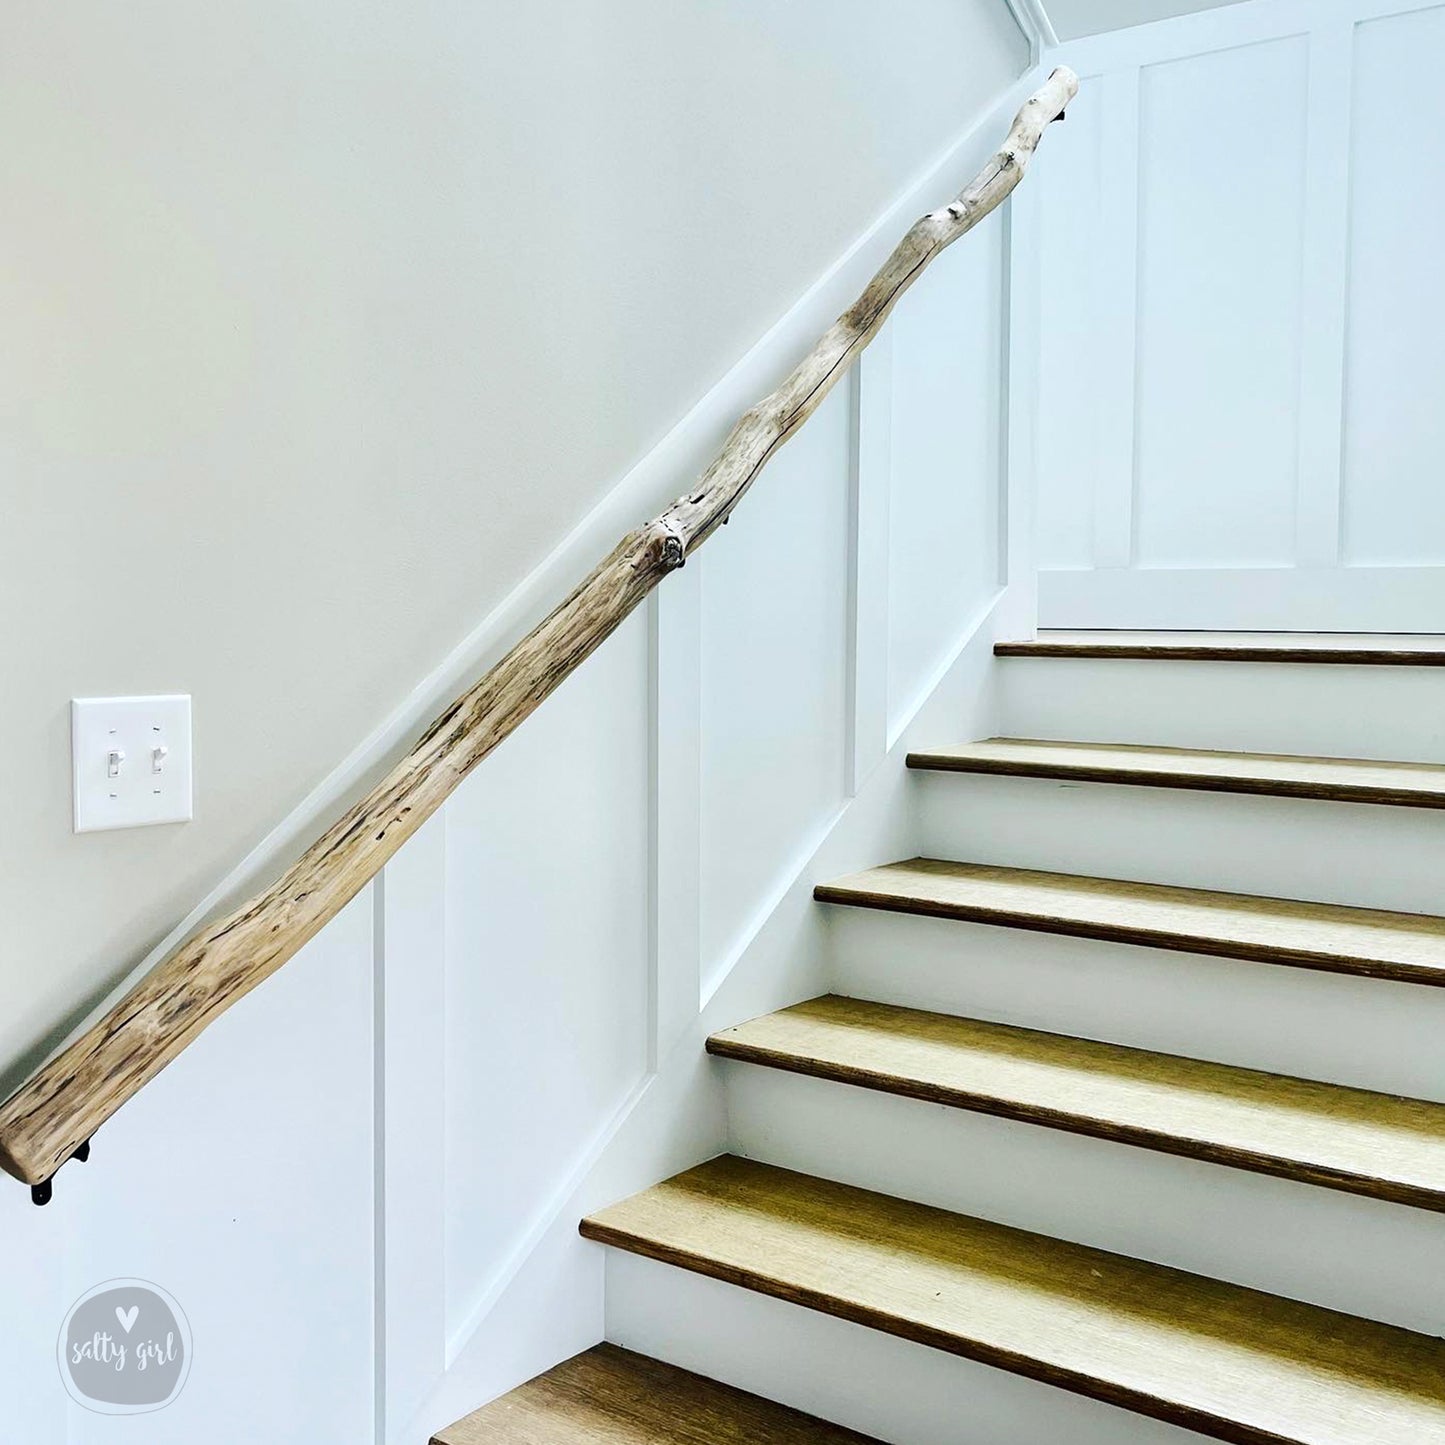 Driftwood Handrail 9-16 FT Stair Rail